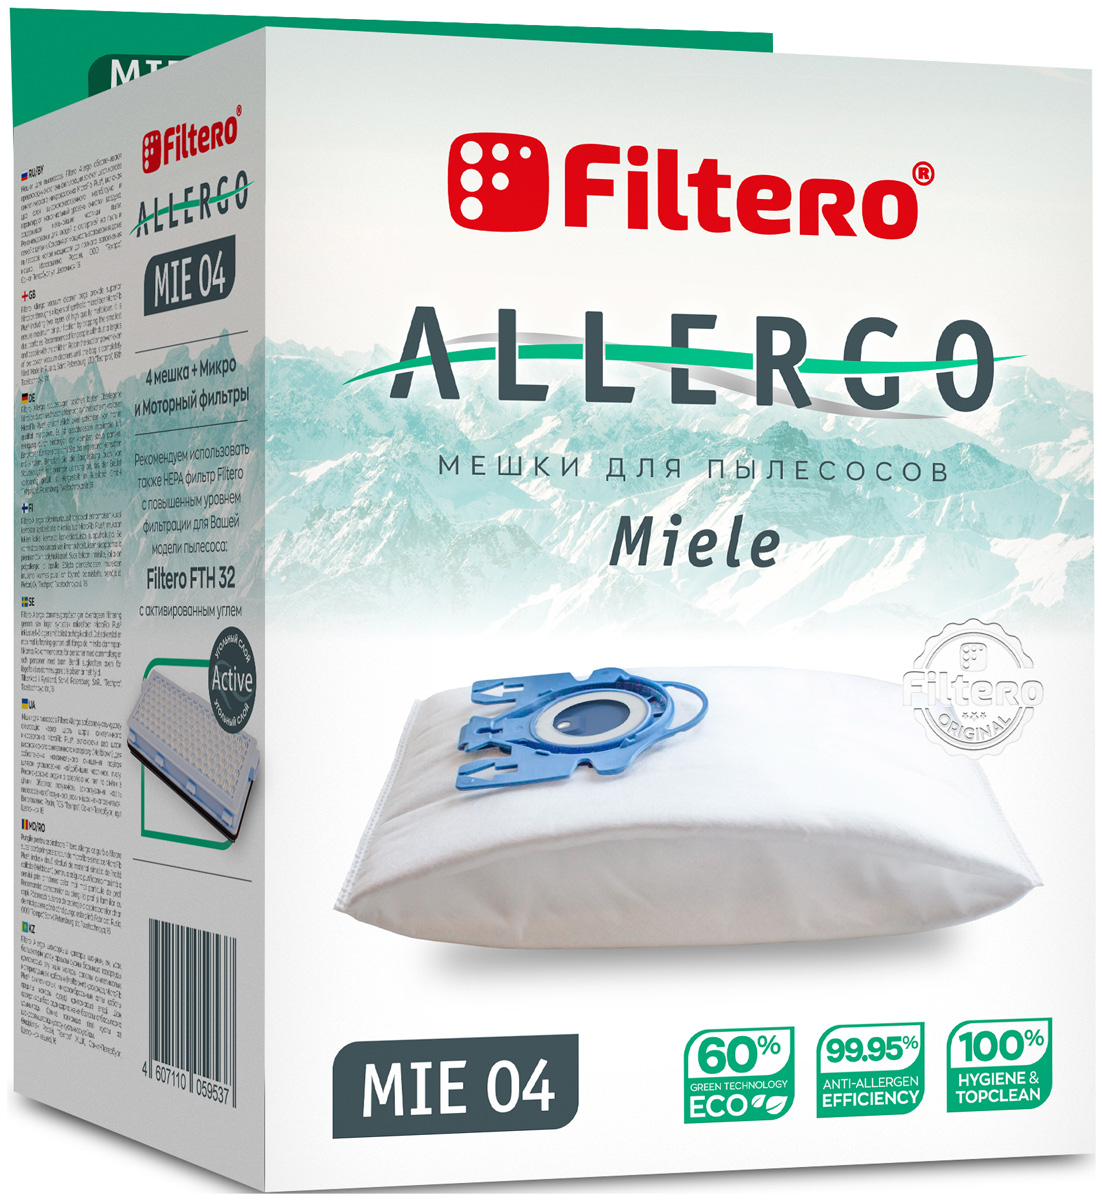 Пылесборники Filtero MIE 04 Allergo 4шт. + моторный фильтр и микрофильтр пылесос miele sgpa3 complete c3 comfort electro бронзовый